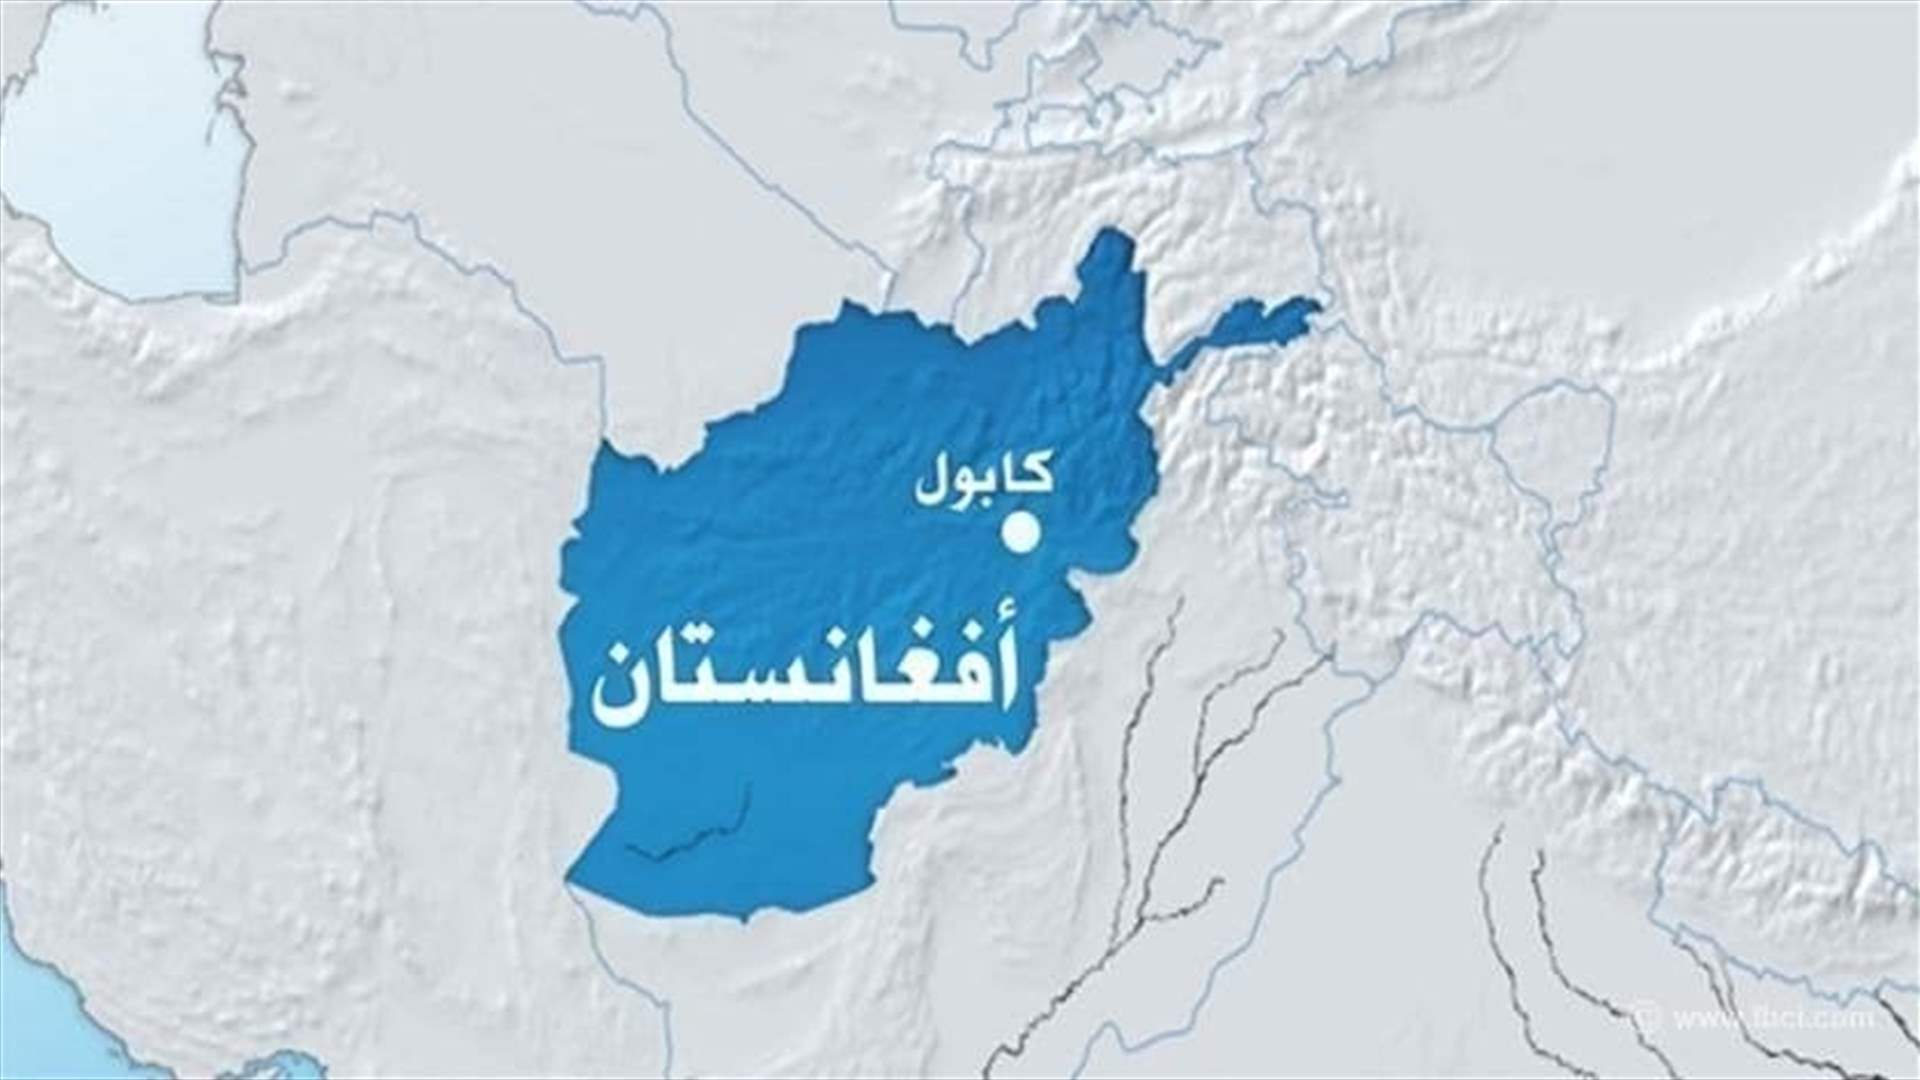 مقتل ستة مدنيين على الأقل في هجوم انتحاري في كابول